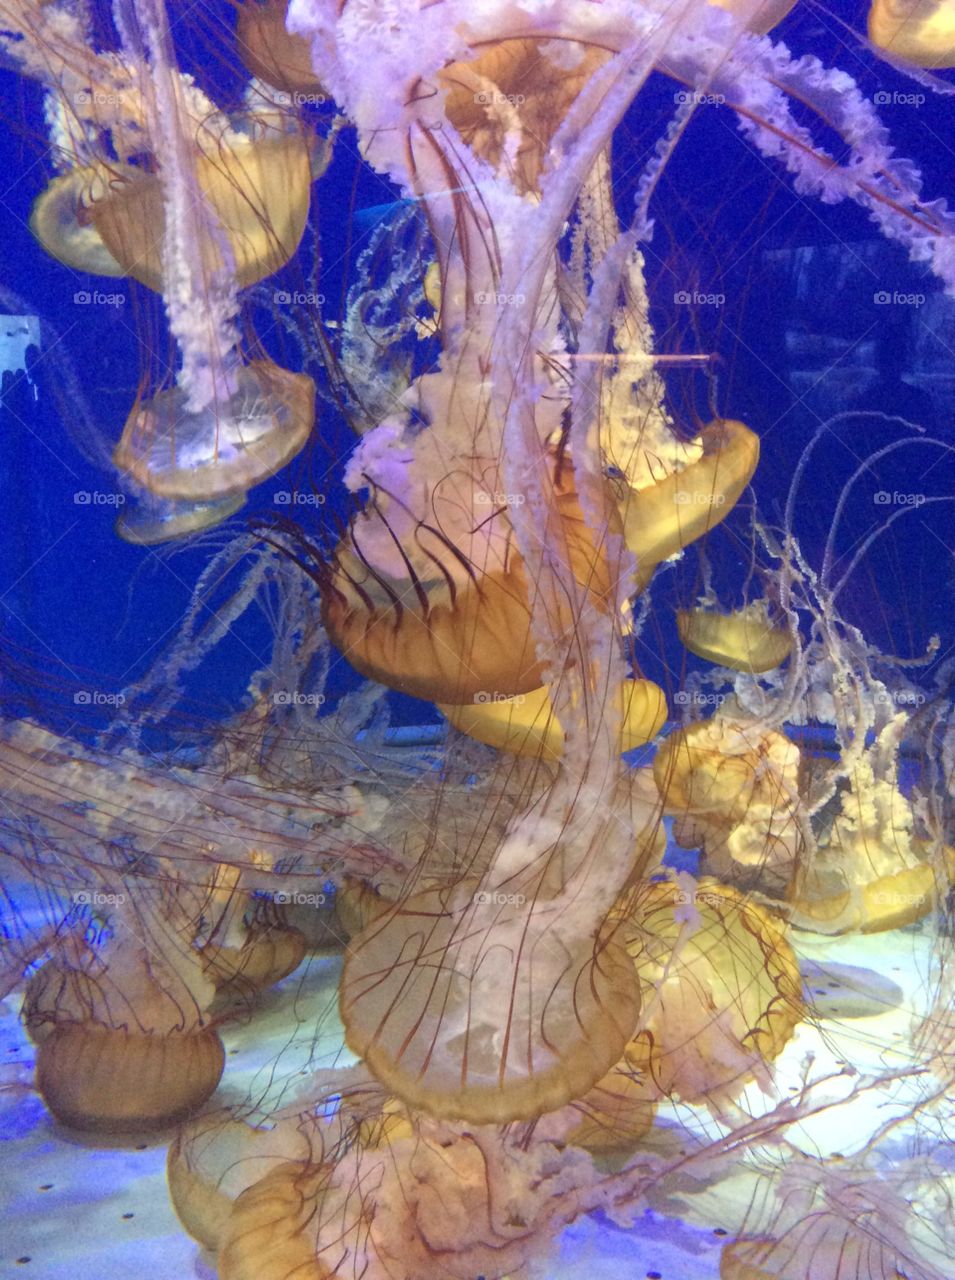 Jellyfish 1. At aquarium of the pacific